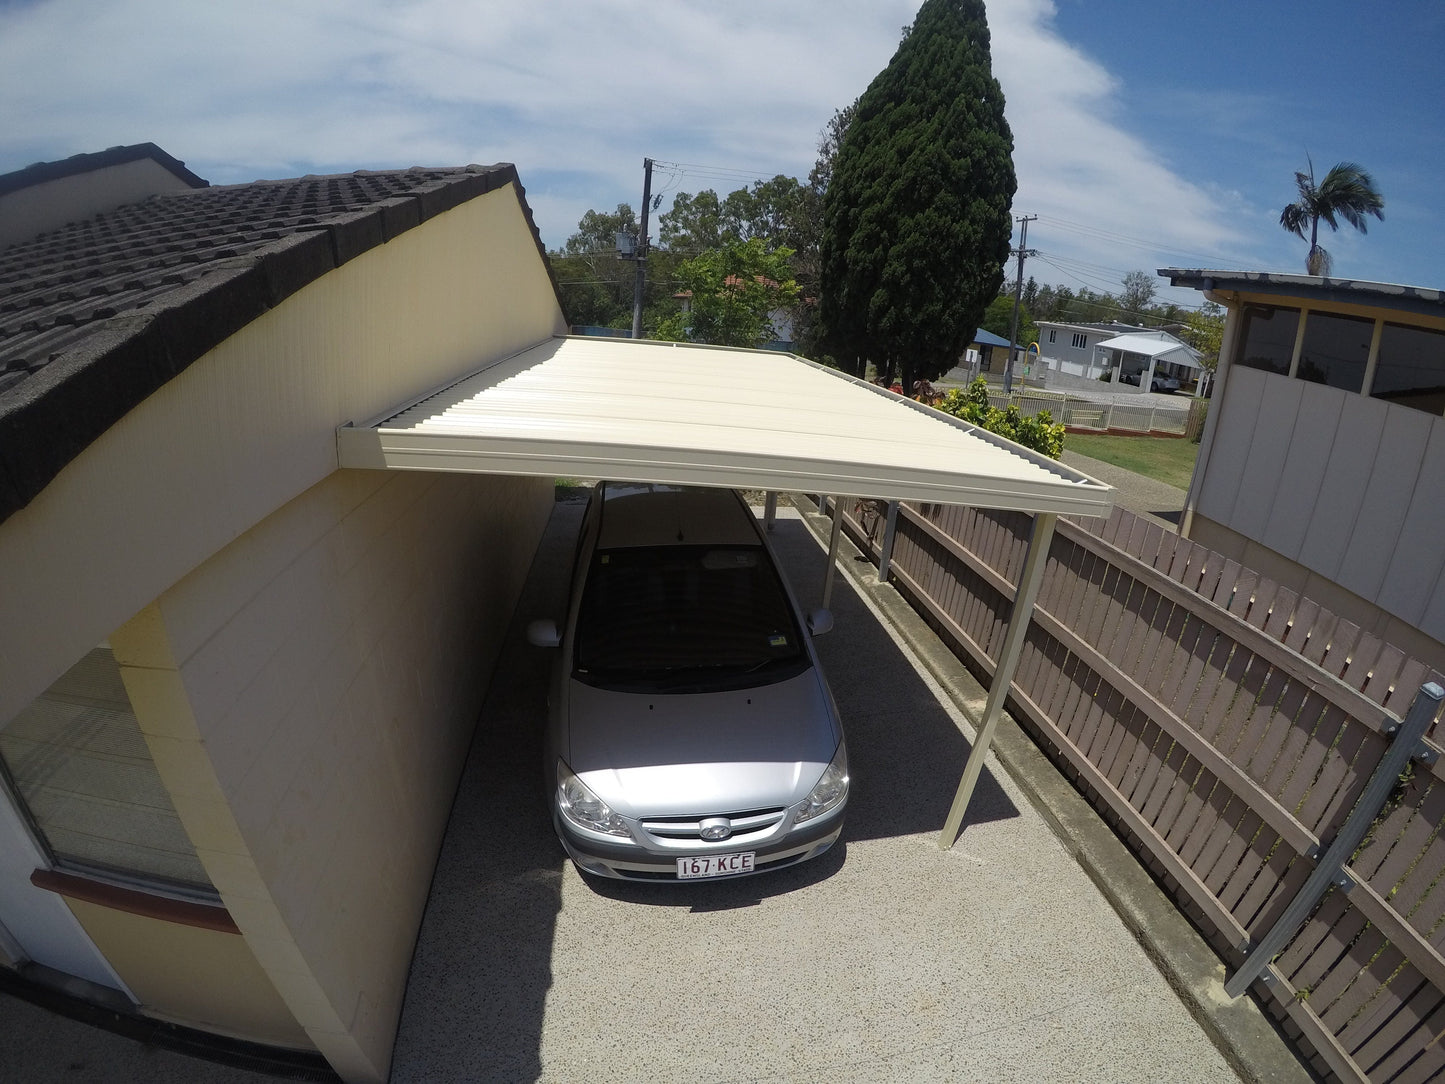 SmartKits Australia Flat Roof Carport- 6m (L) x 3m (W) - With Options